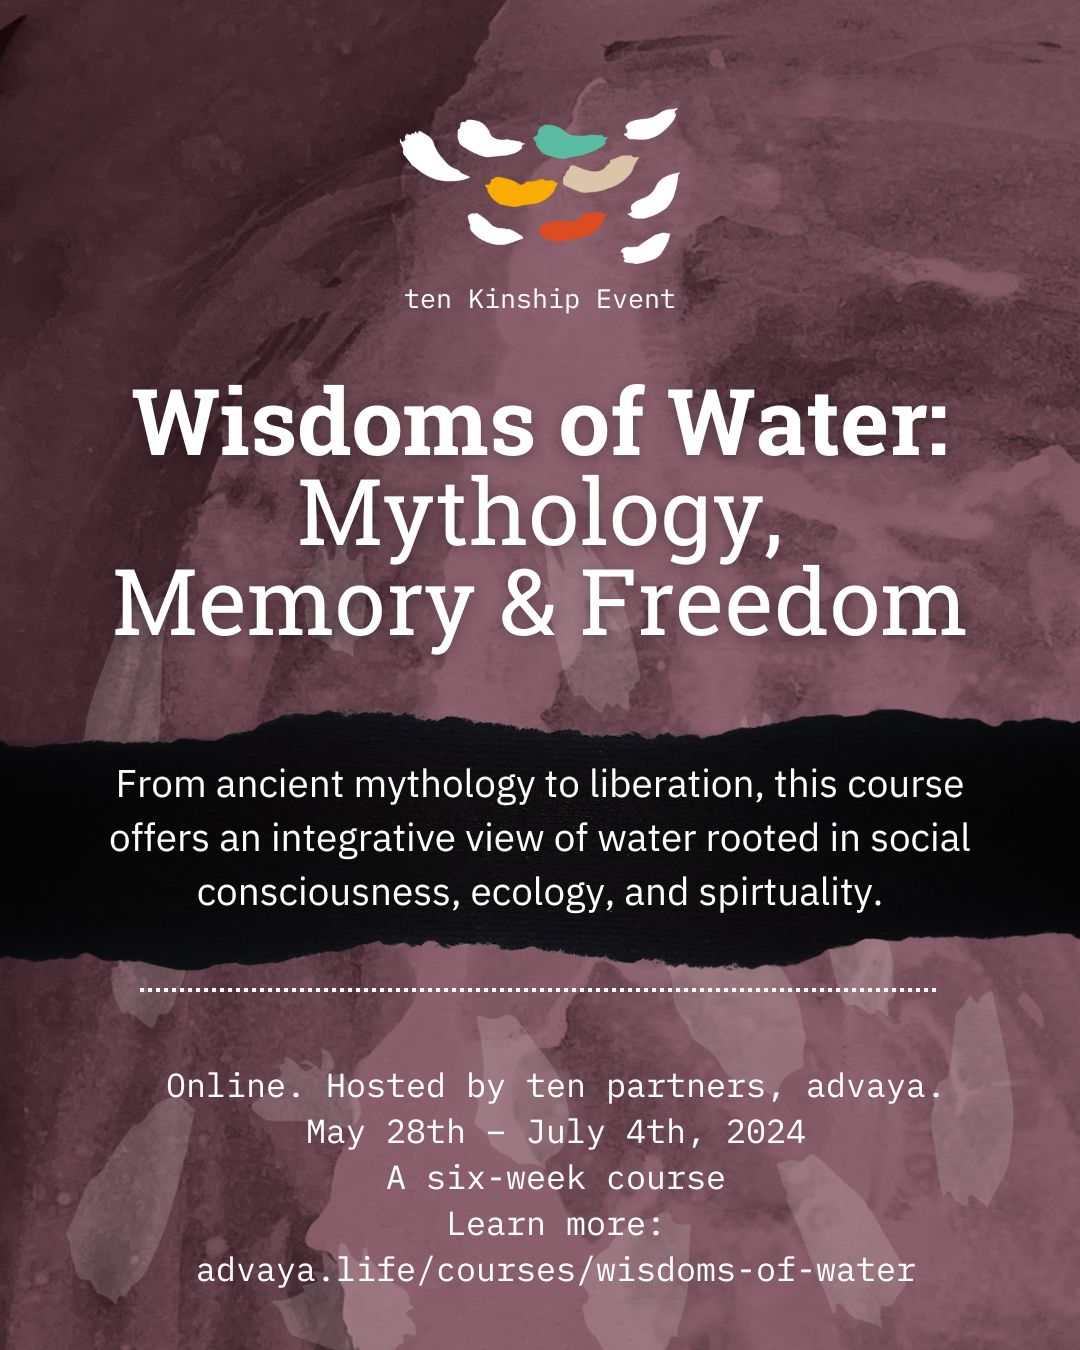 Wisdoms of Water: Mythology, Memory & Freedom